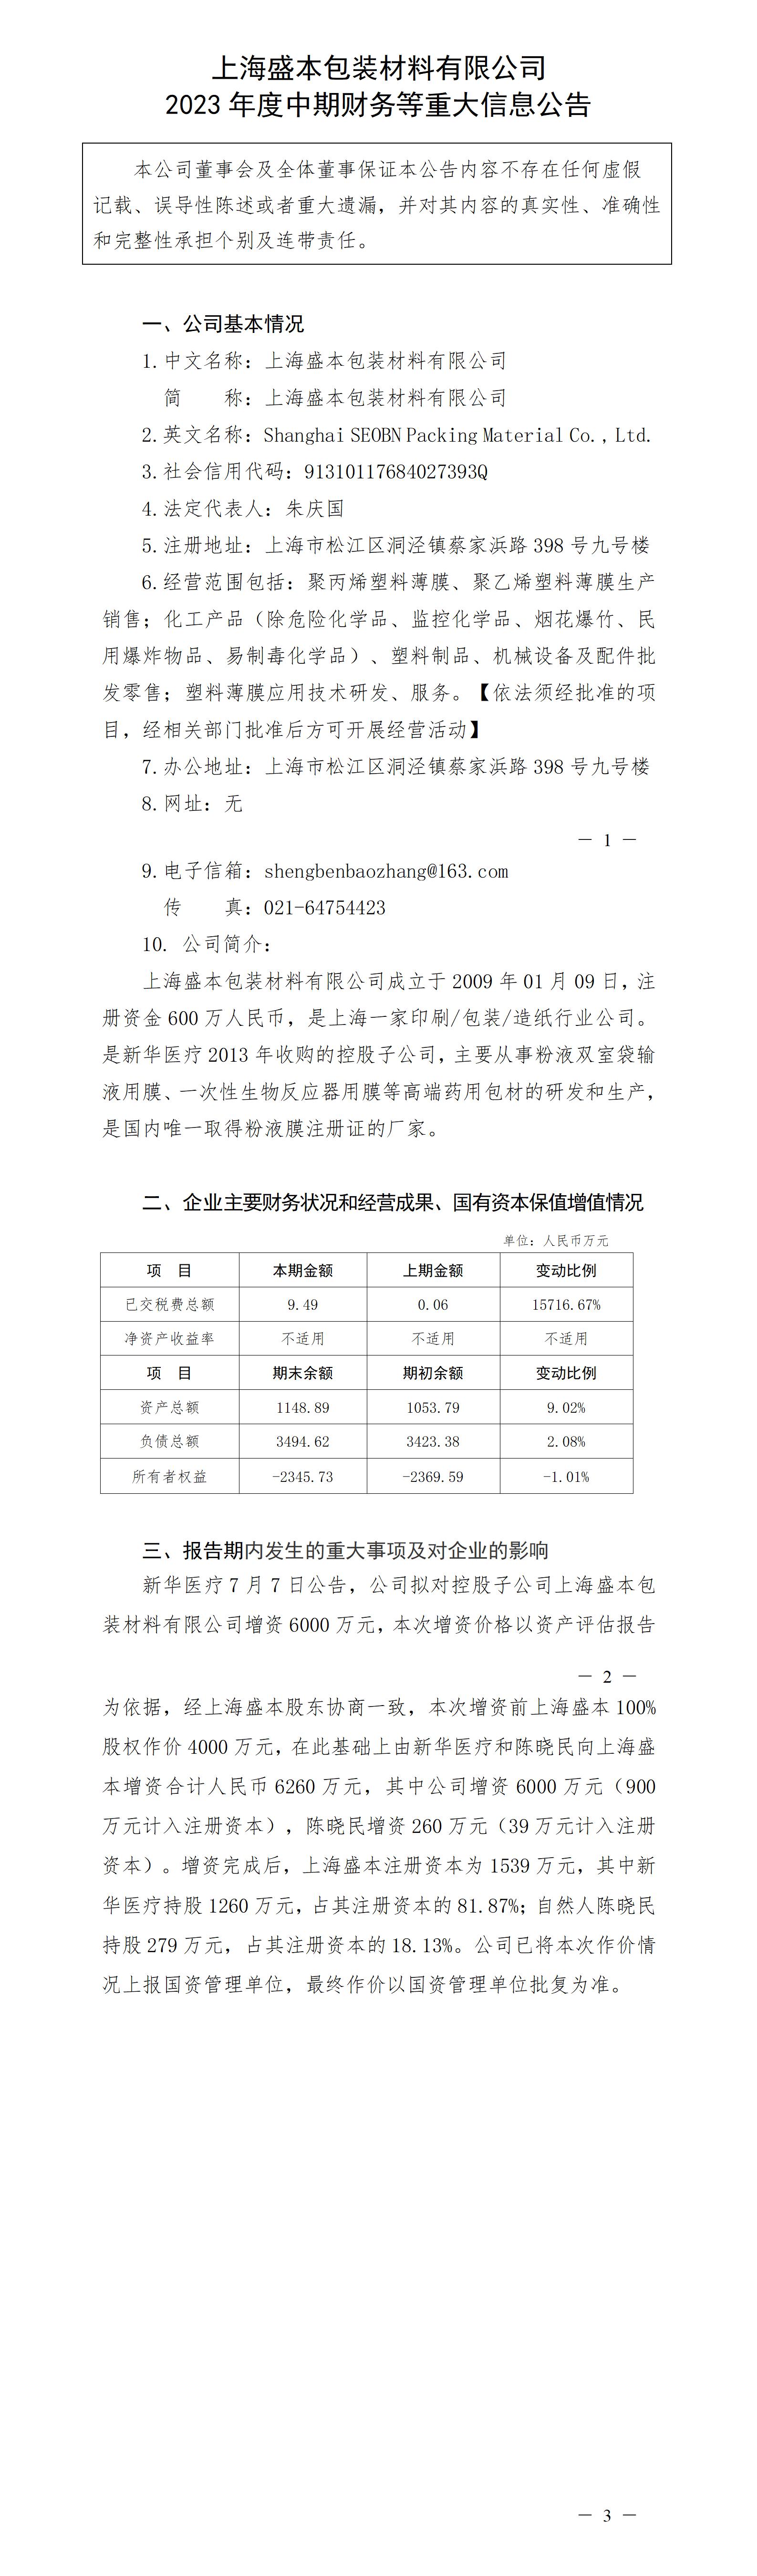 上海盛本包裝材料有限公司2023年度中期財務等重大信息公告_01.jpg